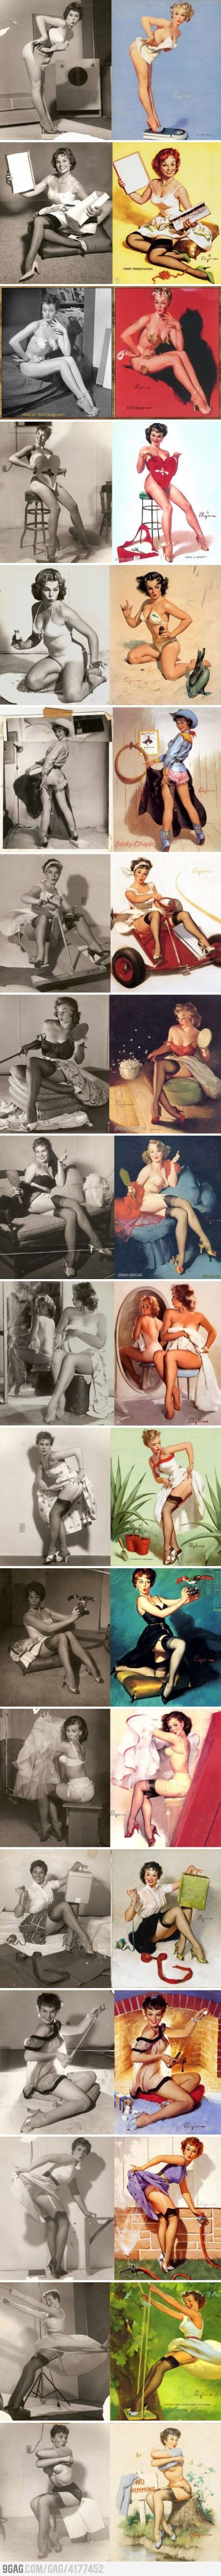 Vintage Real girls vs. Pin-up girls